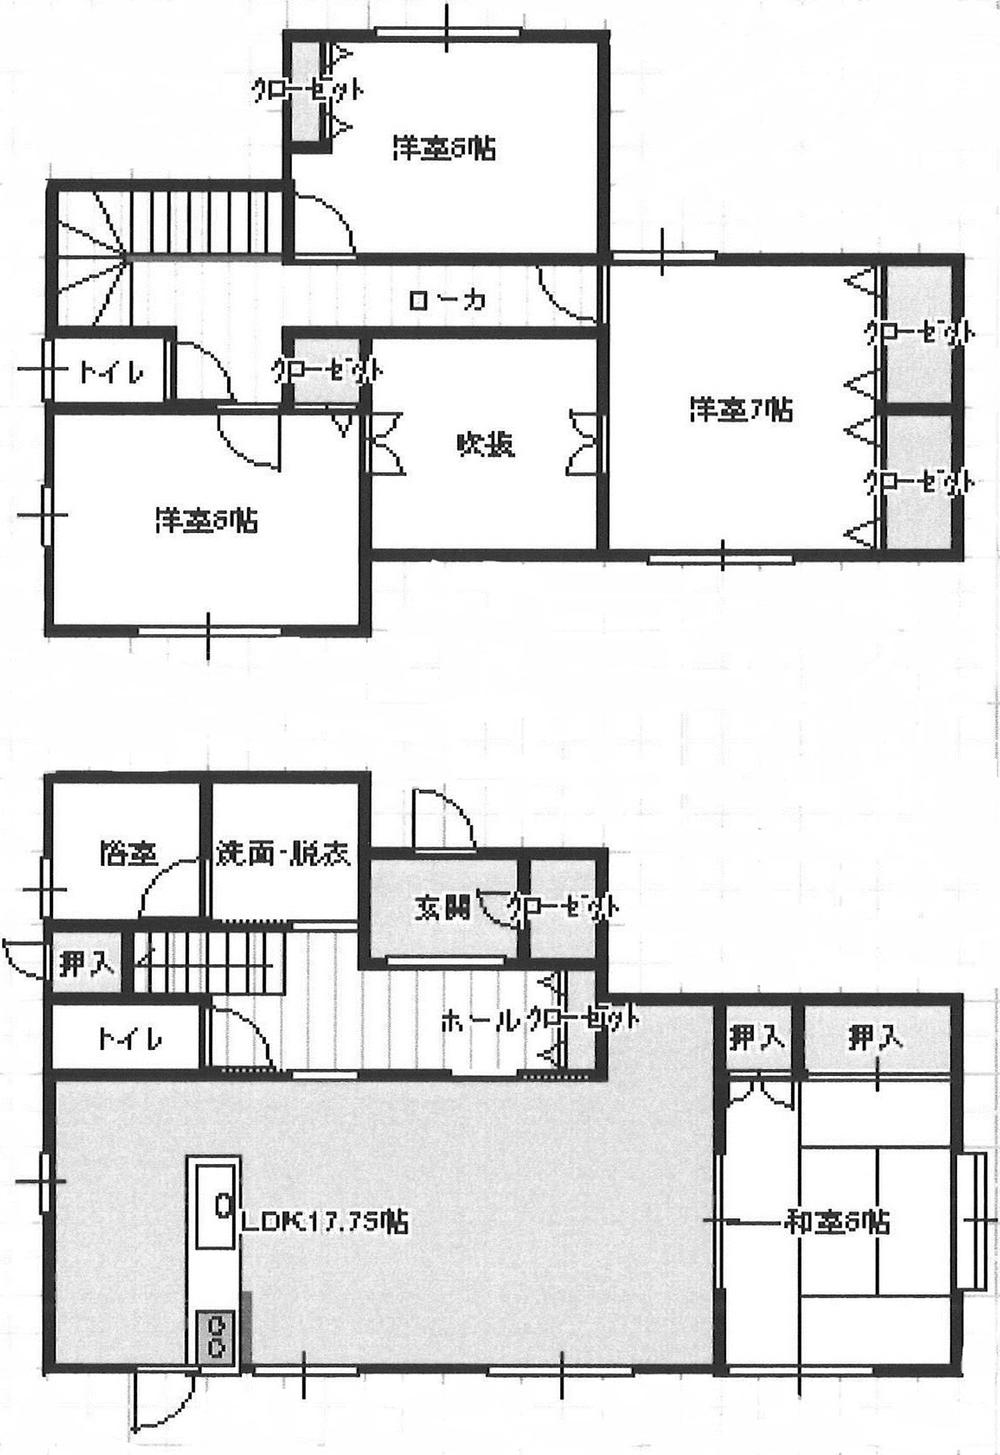 Floor plan. 24.6 million yen, 4LDK, Land area 209.68 sq m , Building area 108.89 sq m